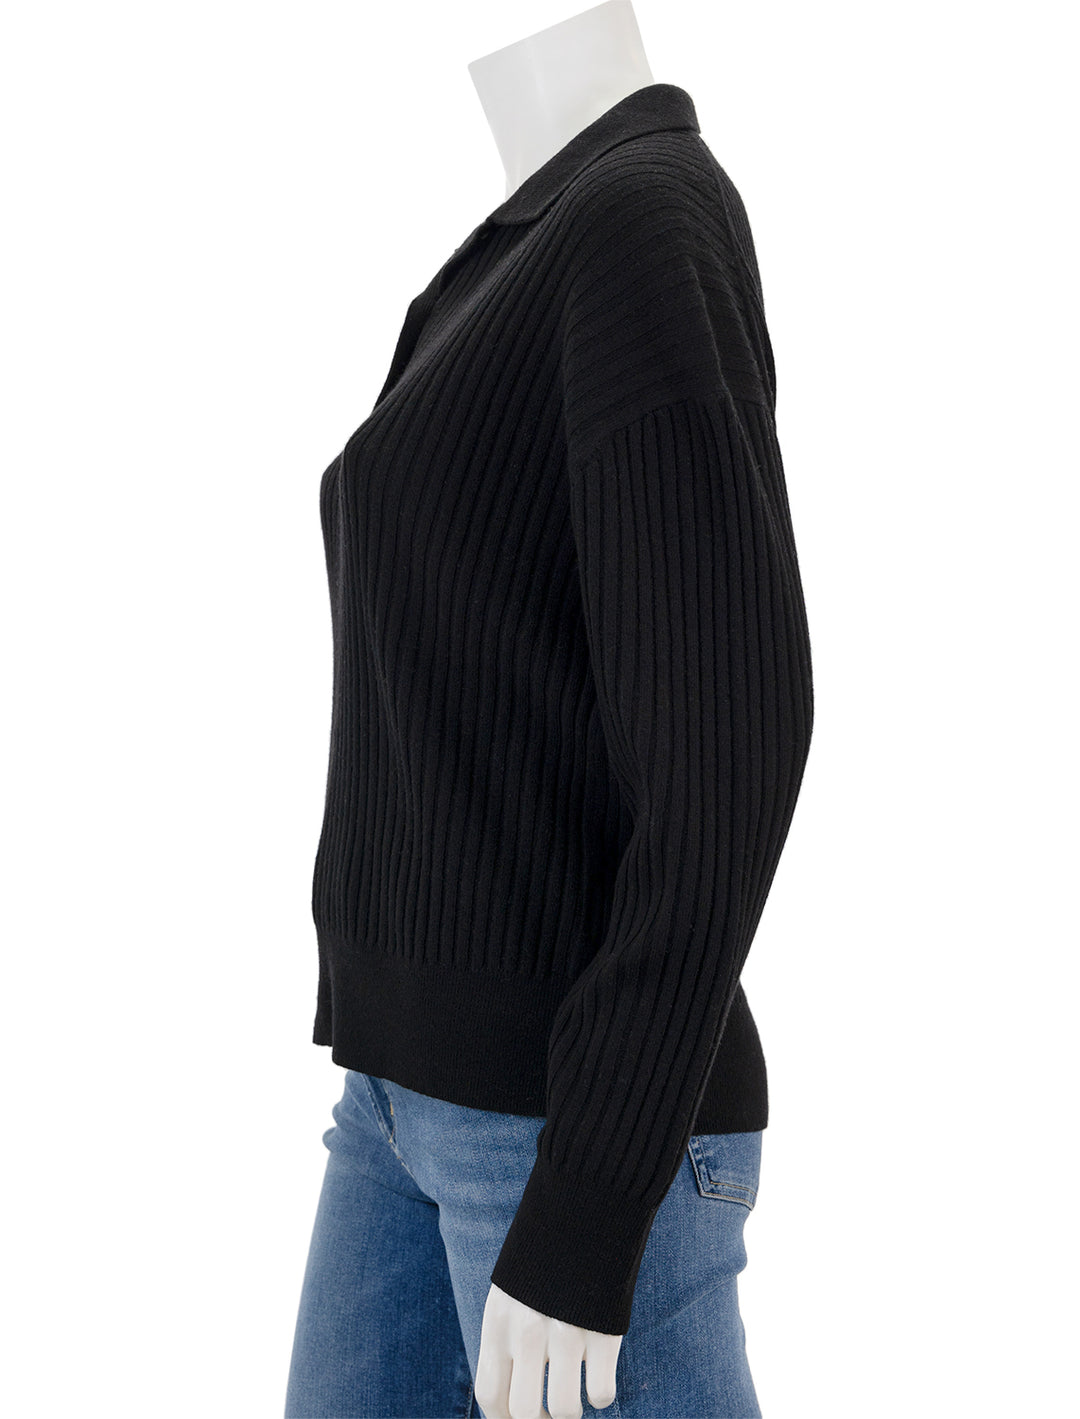 Side view of Nili Lotan's ramona polo sweater in black.